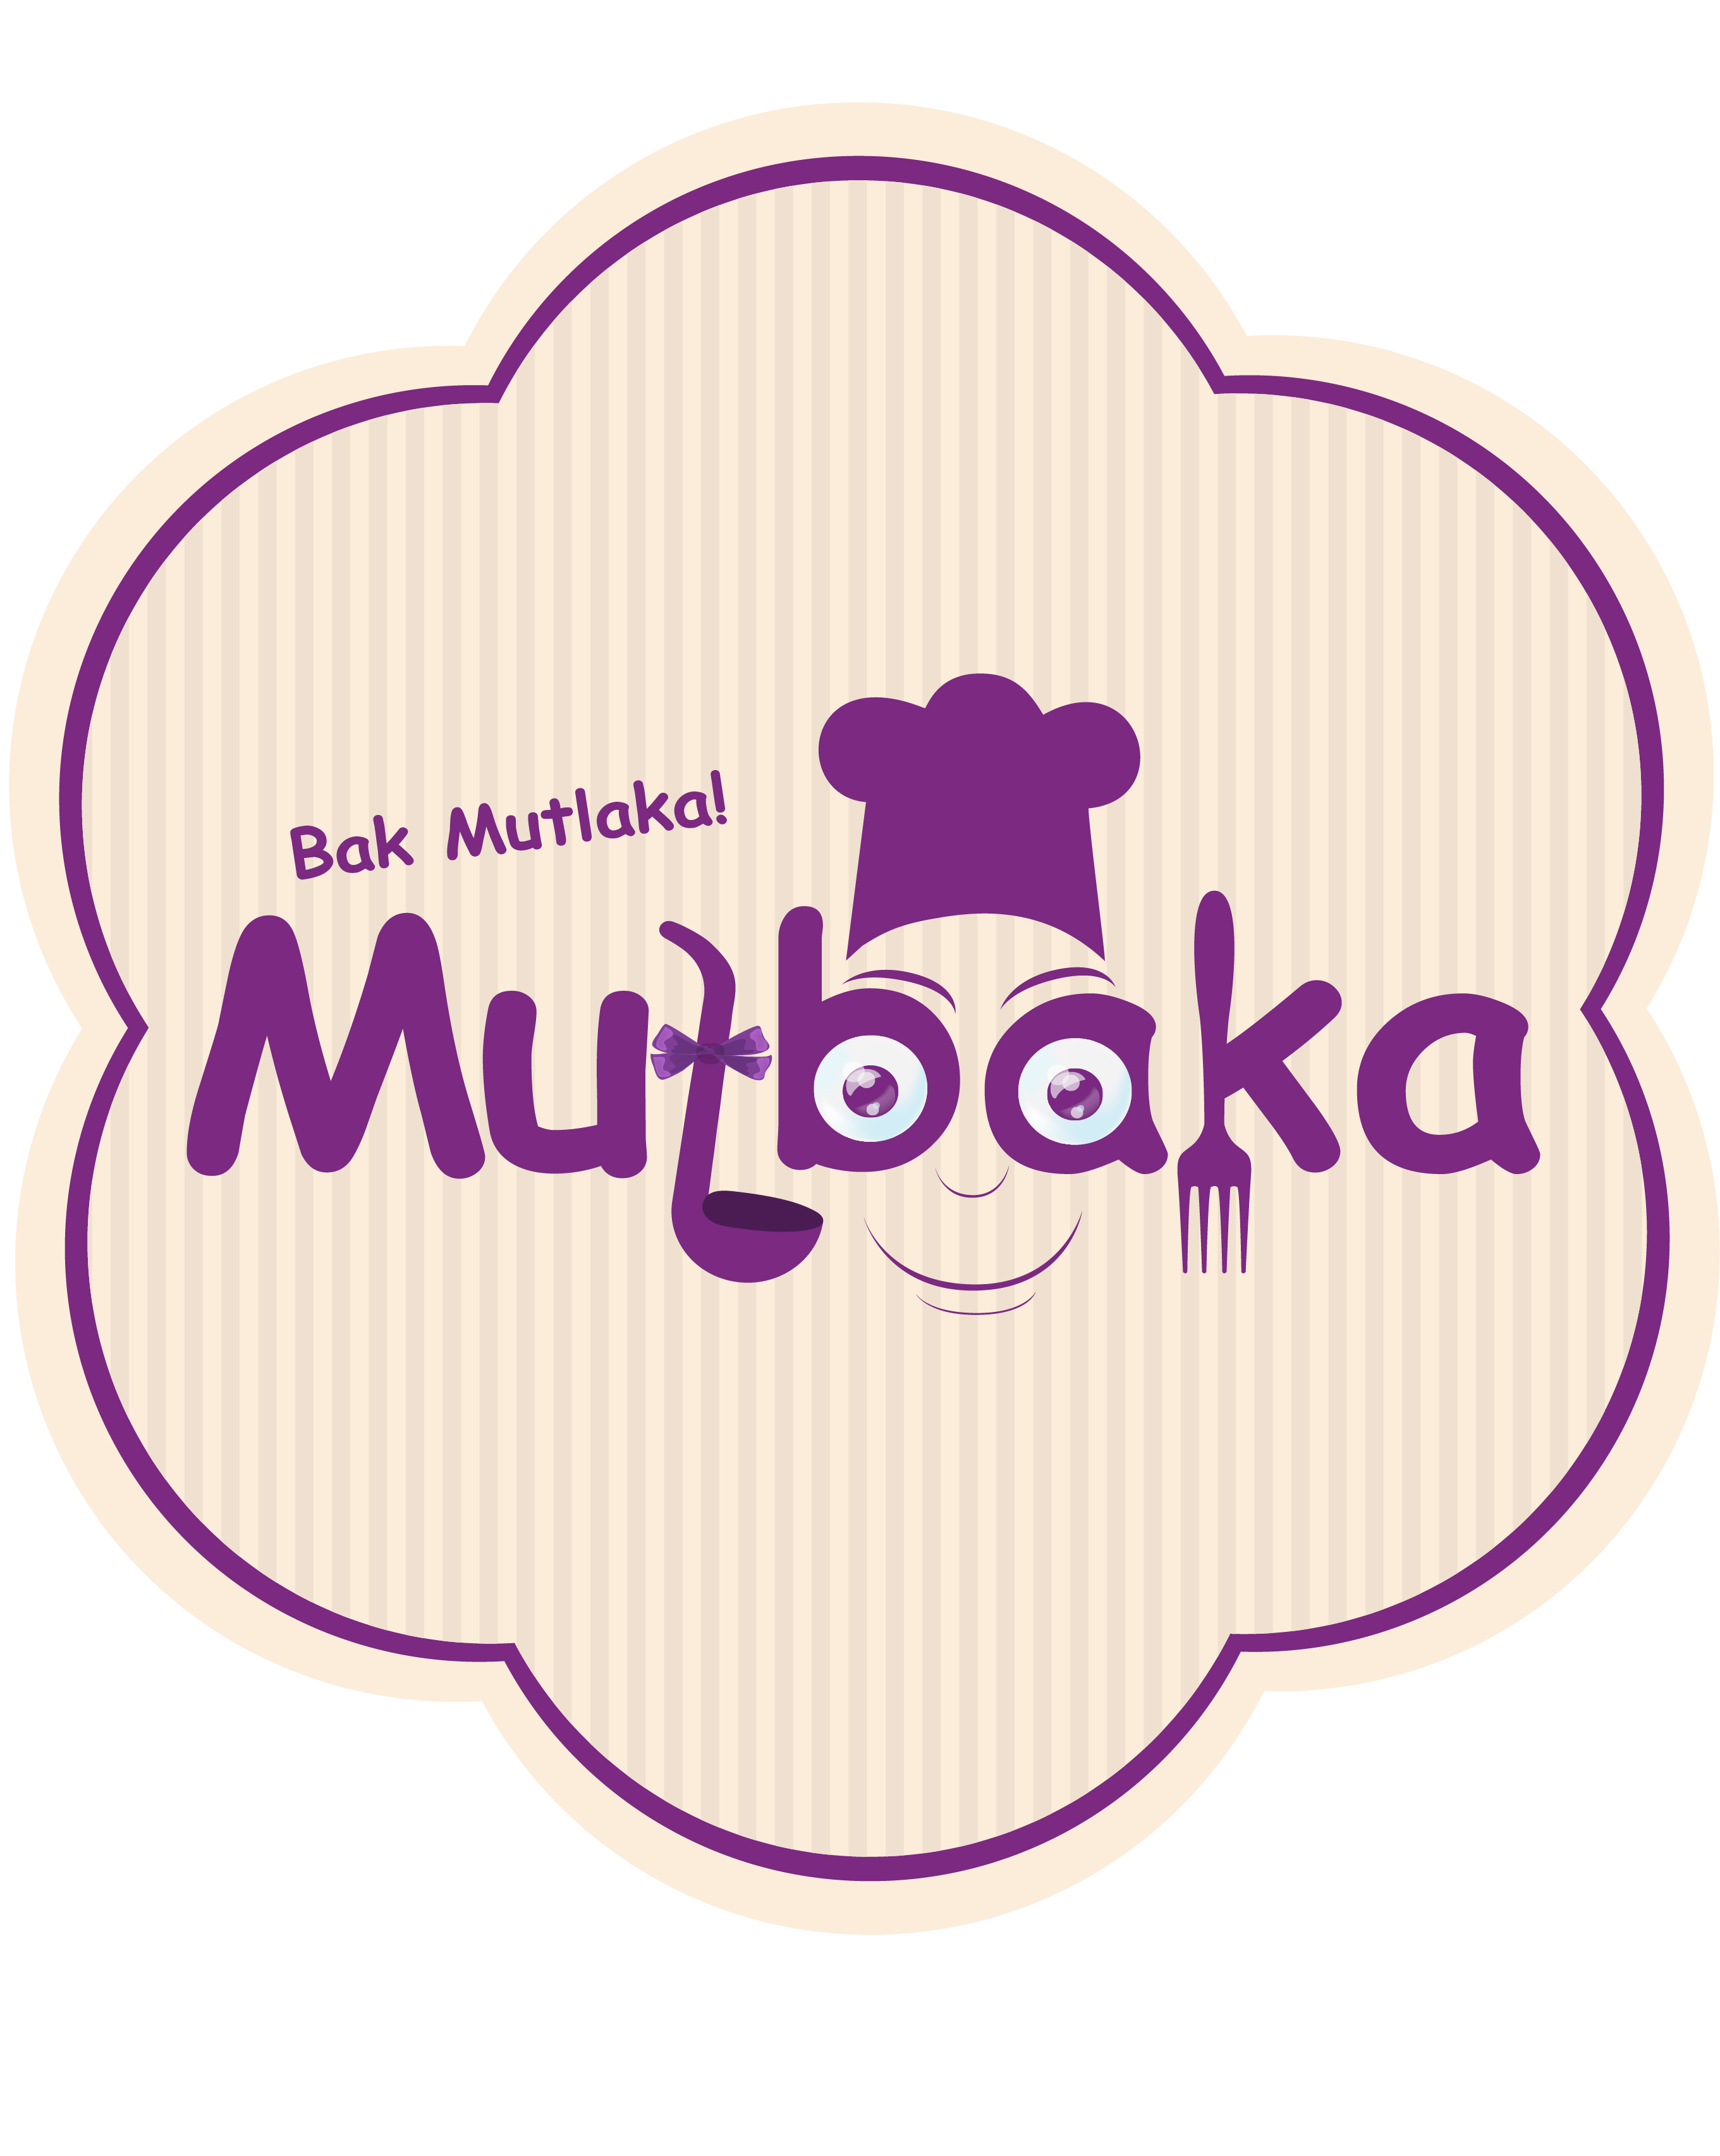 Mutbaka